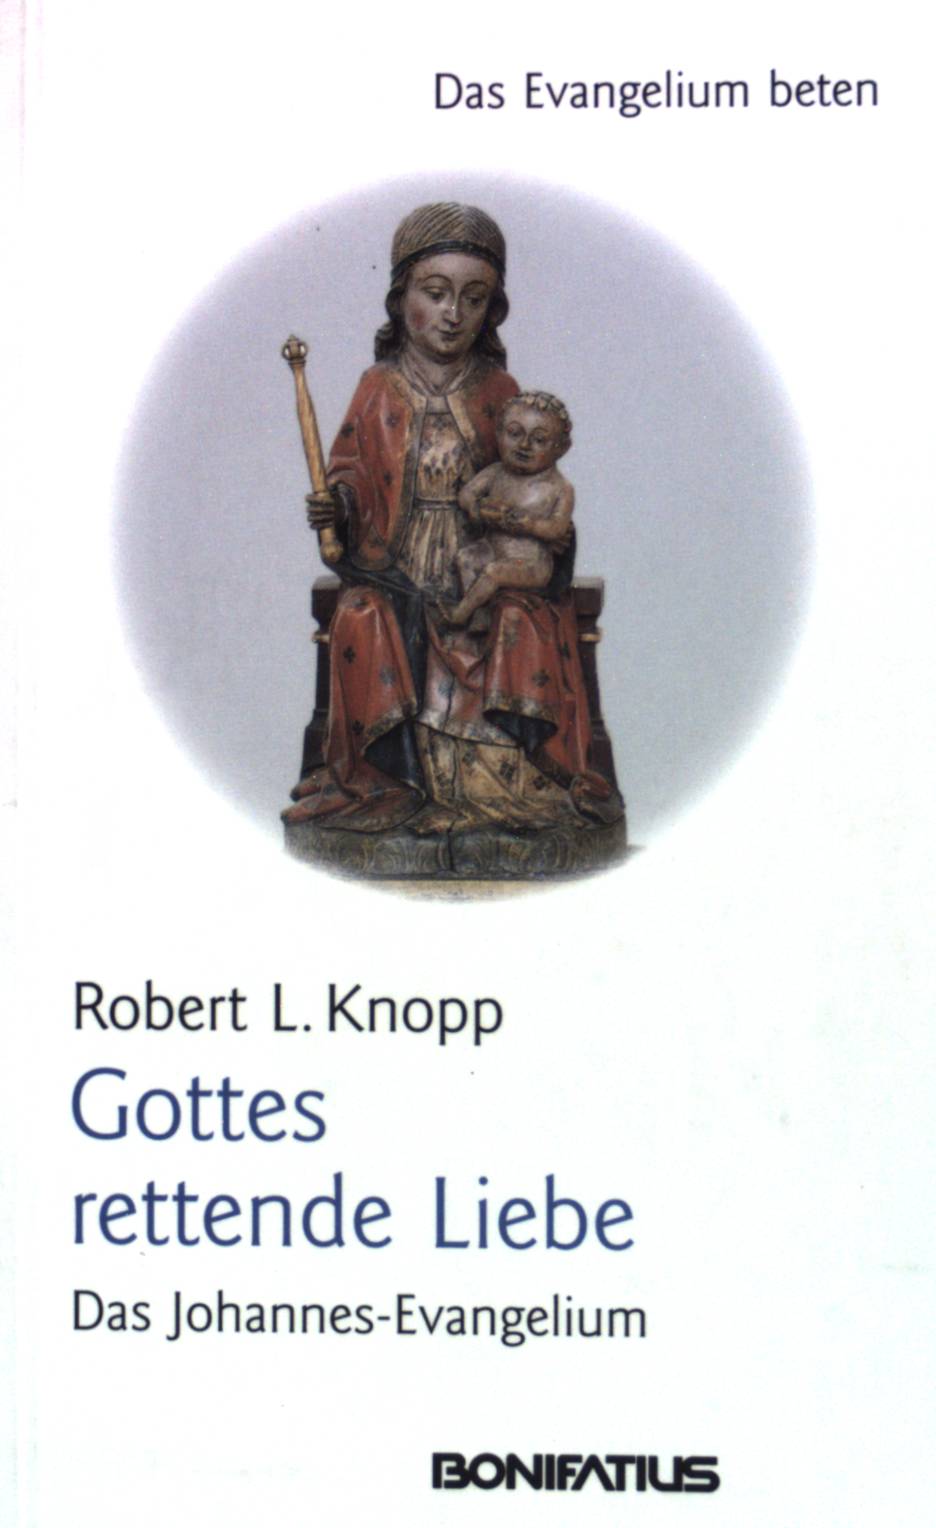 Gottes rettende Liebe: Das Johannes-Evangelium. Das Evangelium beten. - Knopp, Robert L.